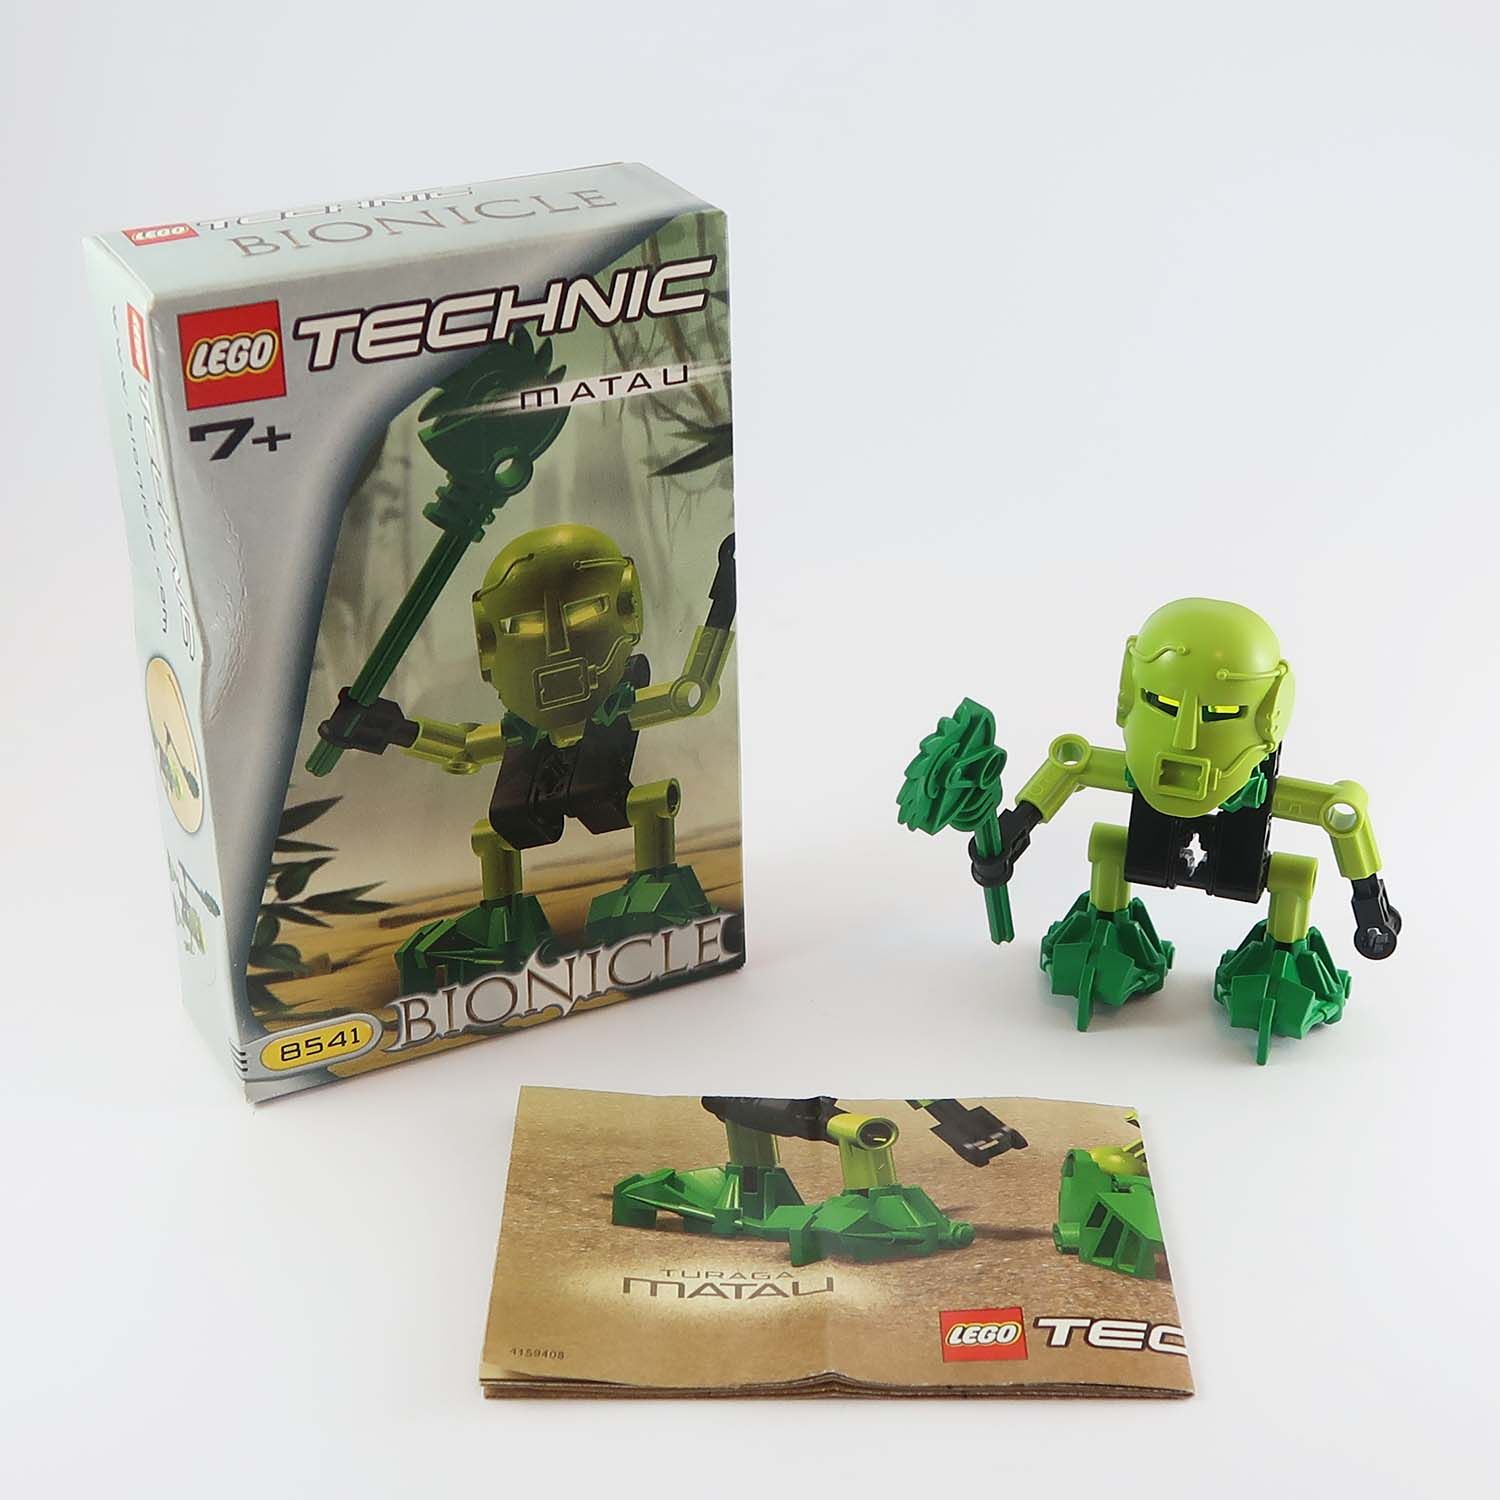 LEGO Bionicle - Turaga Matau (8541)